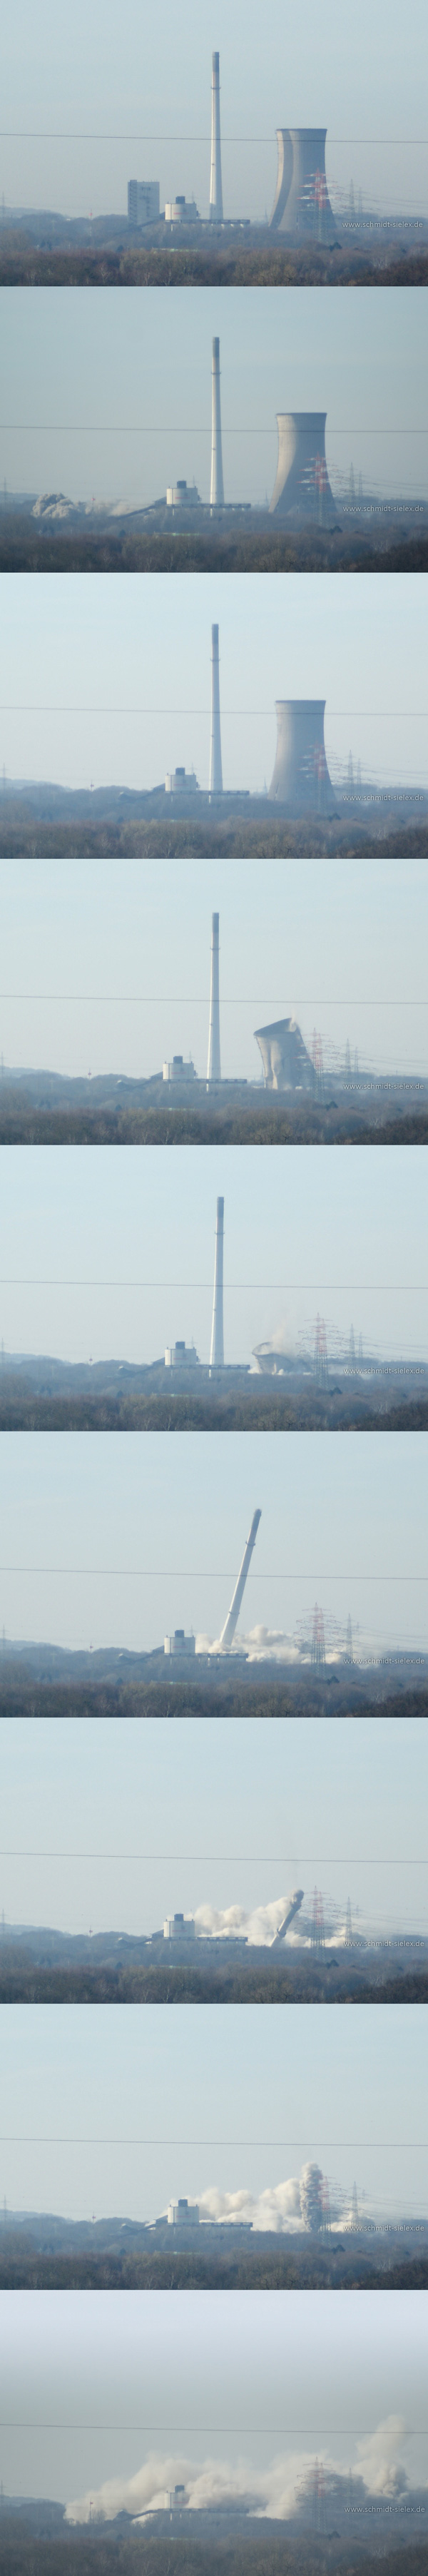 Fotoserie der Sprengung des Kraftwerks Knepper. Neun Einzelfotos in einem Bild.